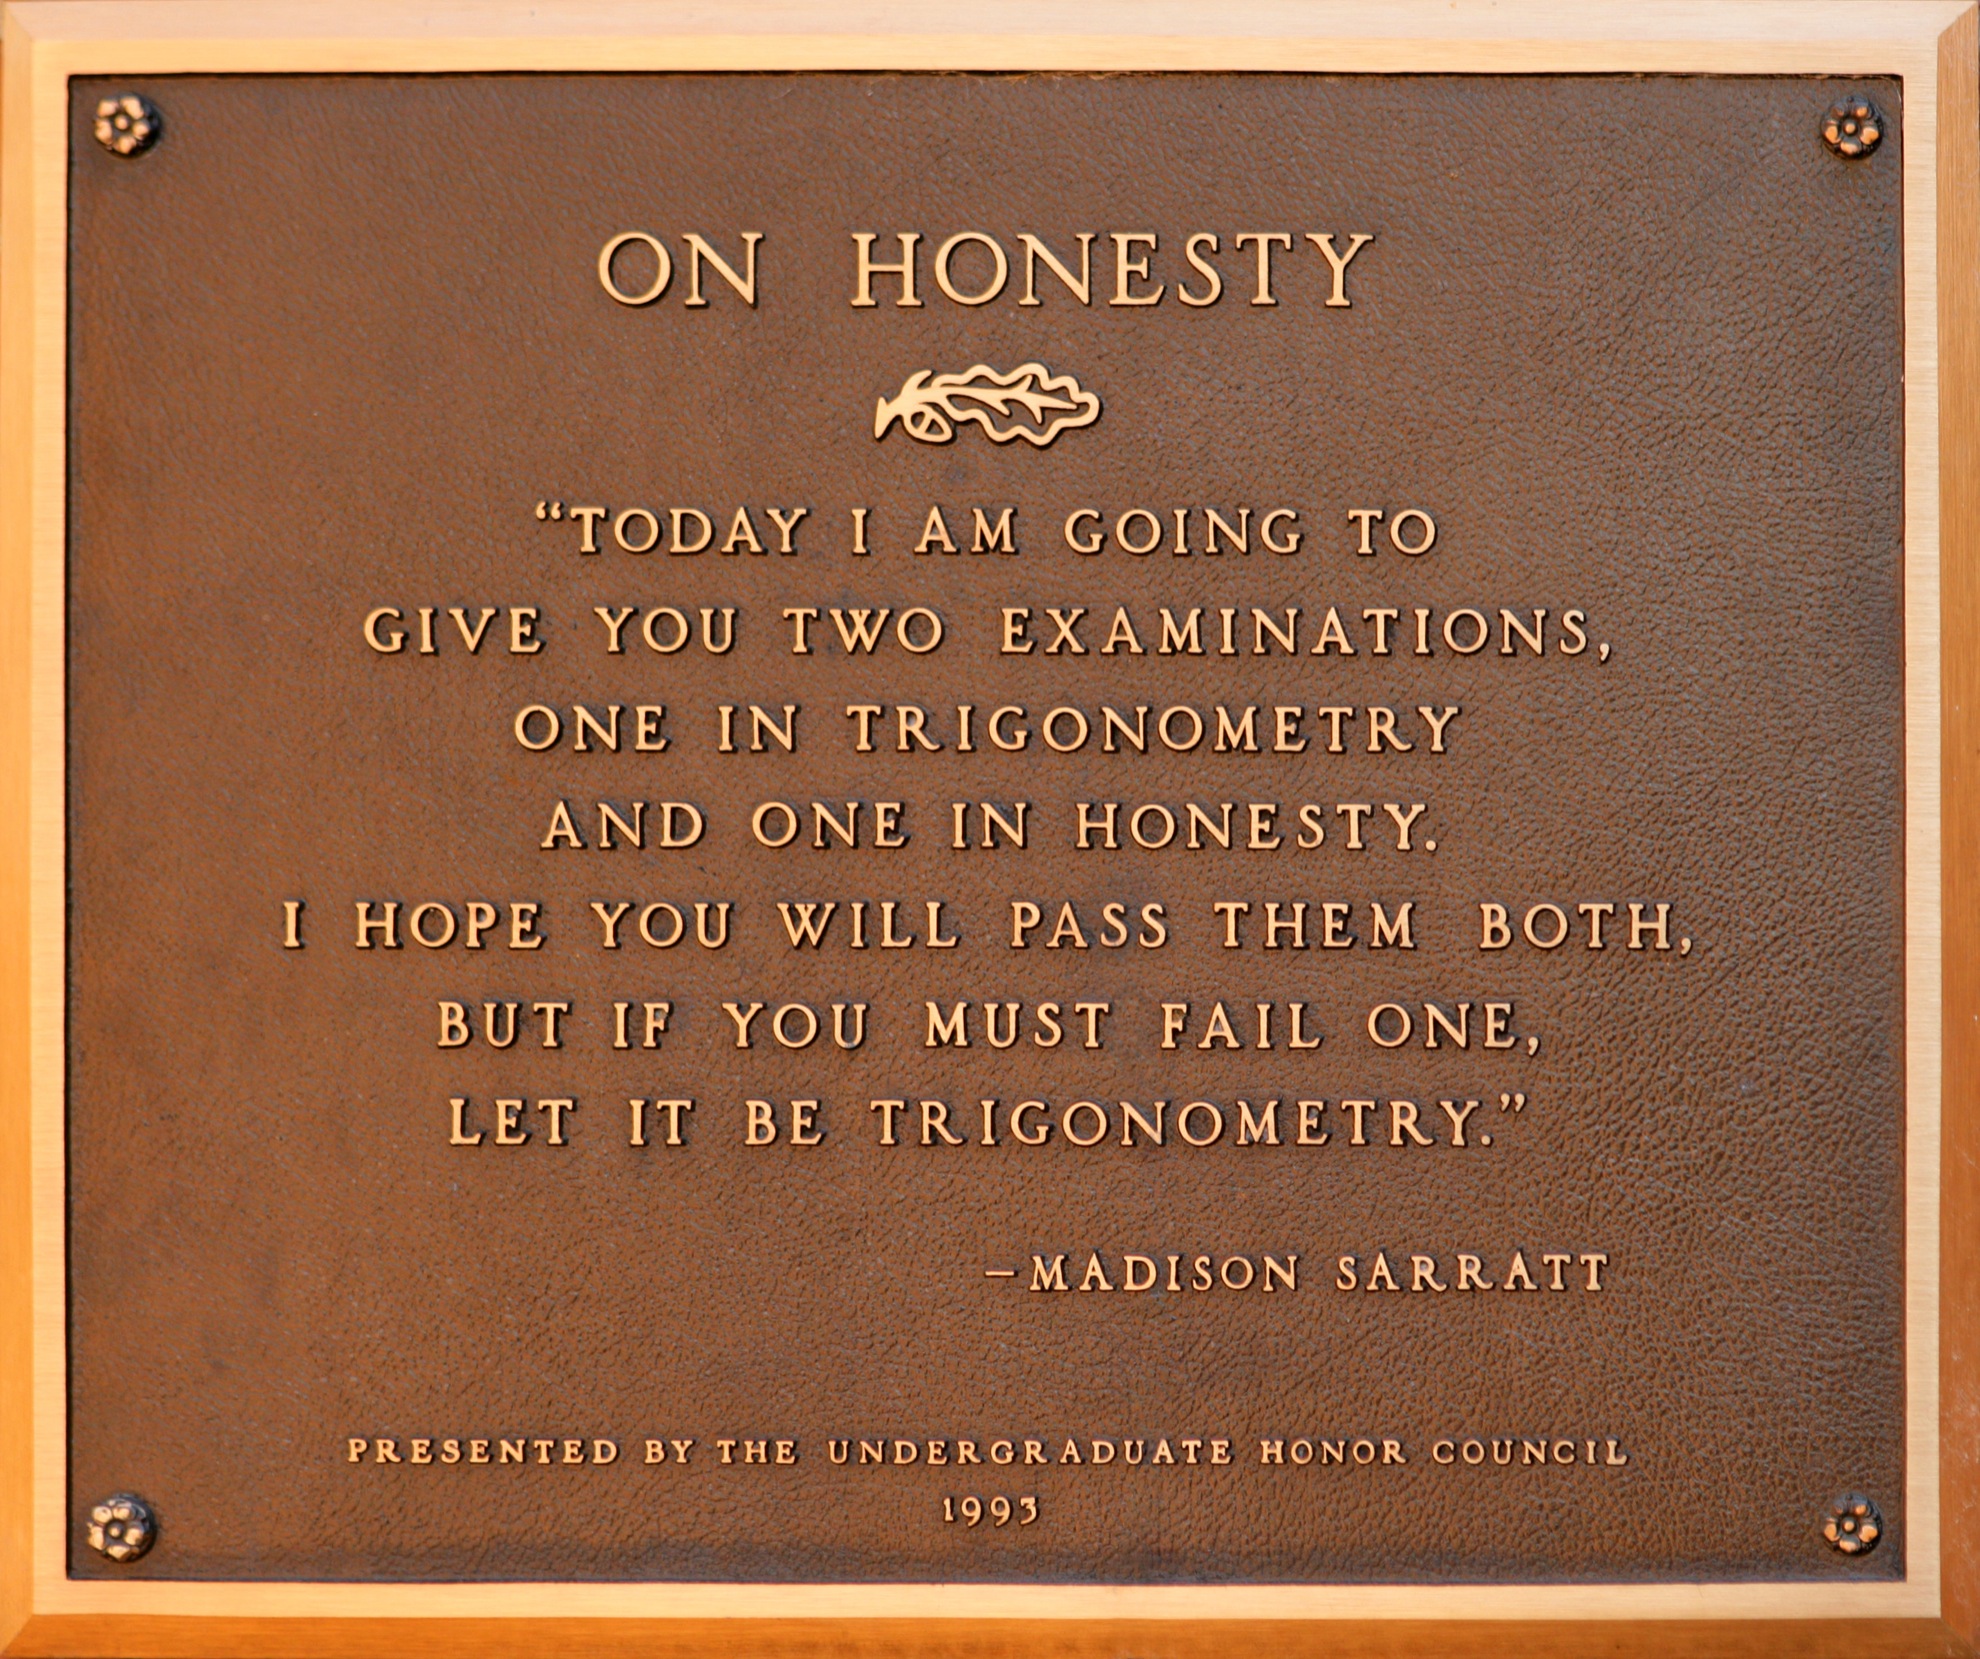 Vanderbilt University's plaque "On Honesty"